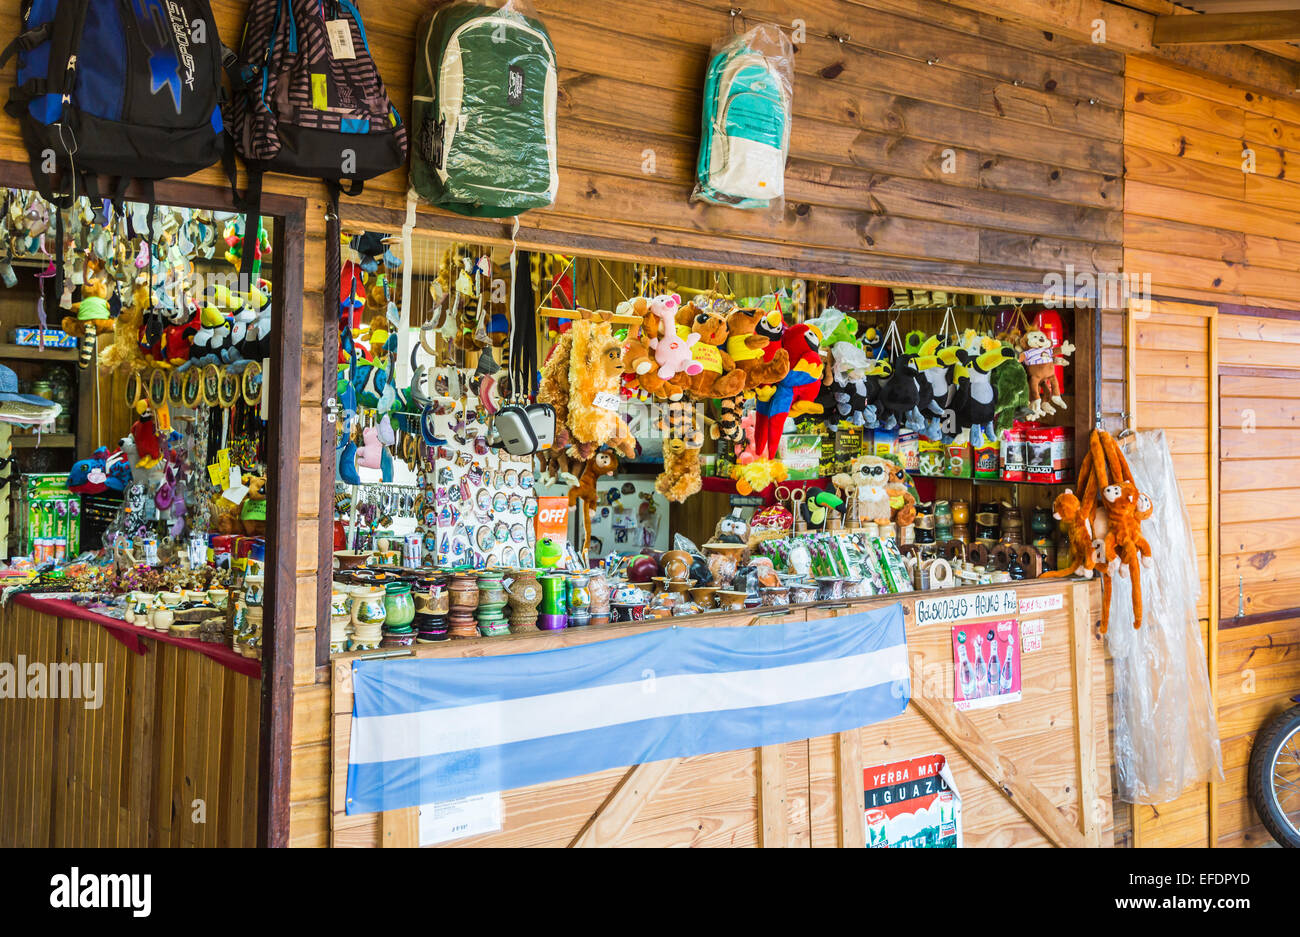 Negozio di souvenir vendono regalini locali e negozi di souvenir, Puerto Iguazú, in Argentina, famoso per essere il triplo delle frontiere dell'Argentina, il Brasile e il Paraguay Foto Stock